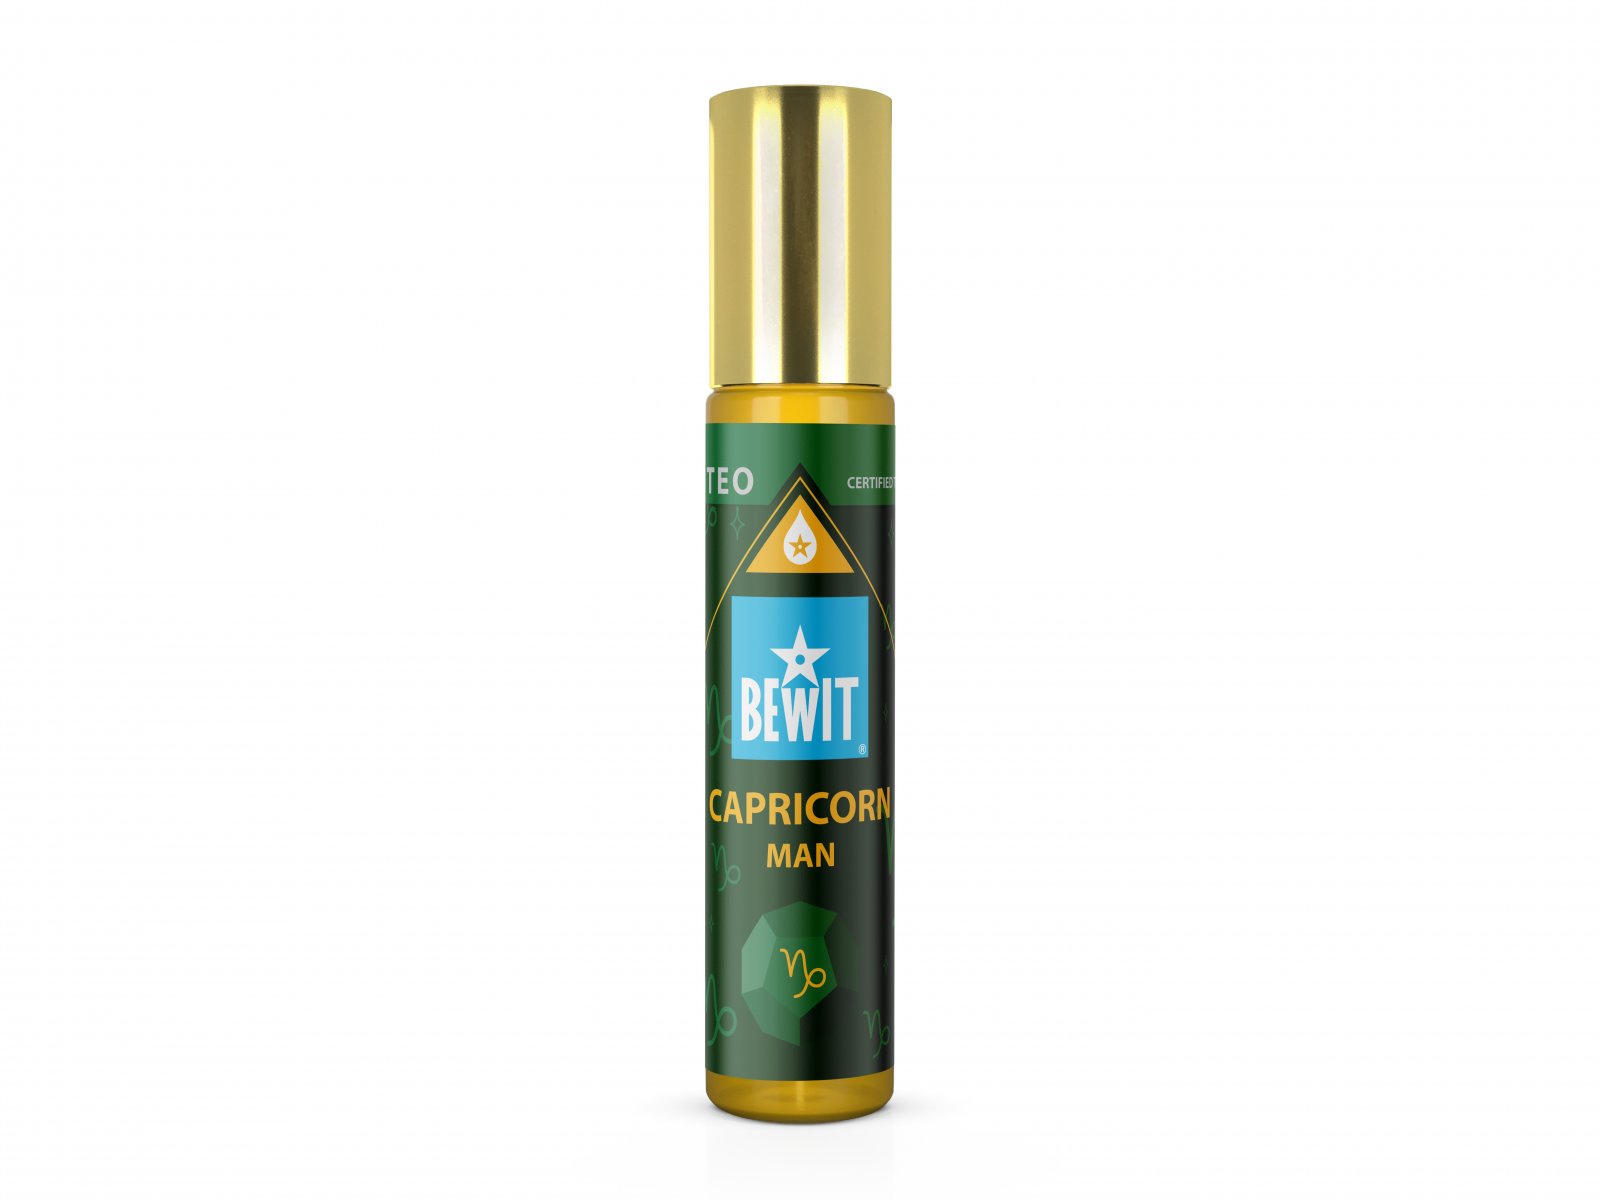 BEWIT MAN CAPRICORN (KOZOROH) - Mužský roll-on olejový parfém